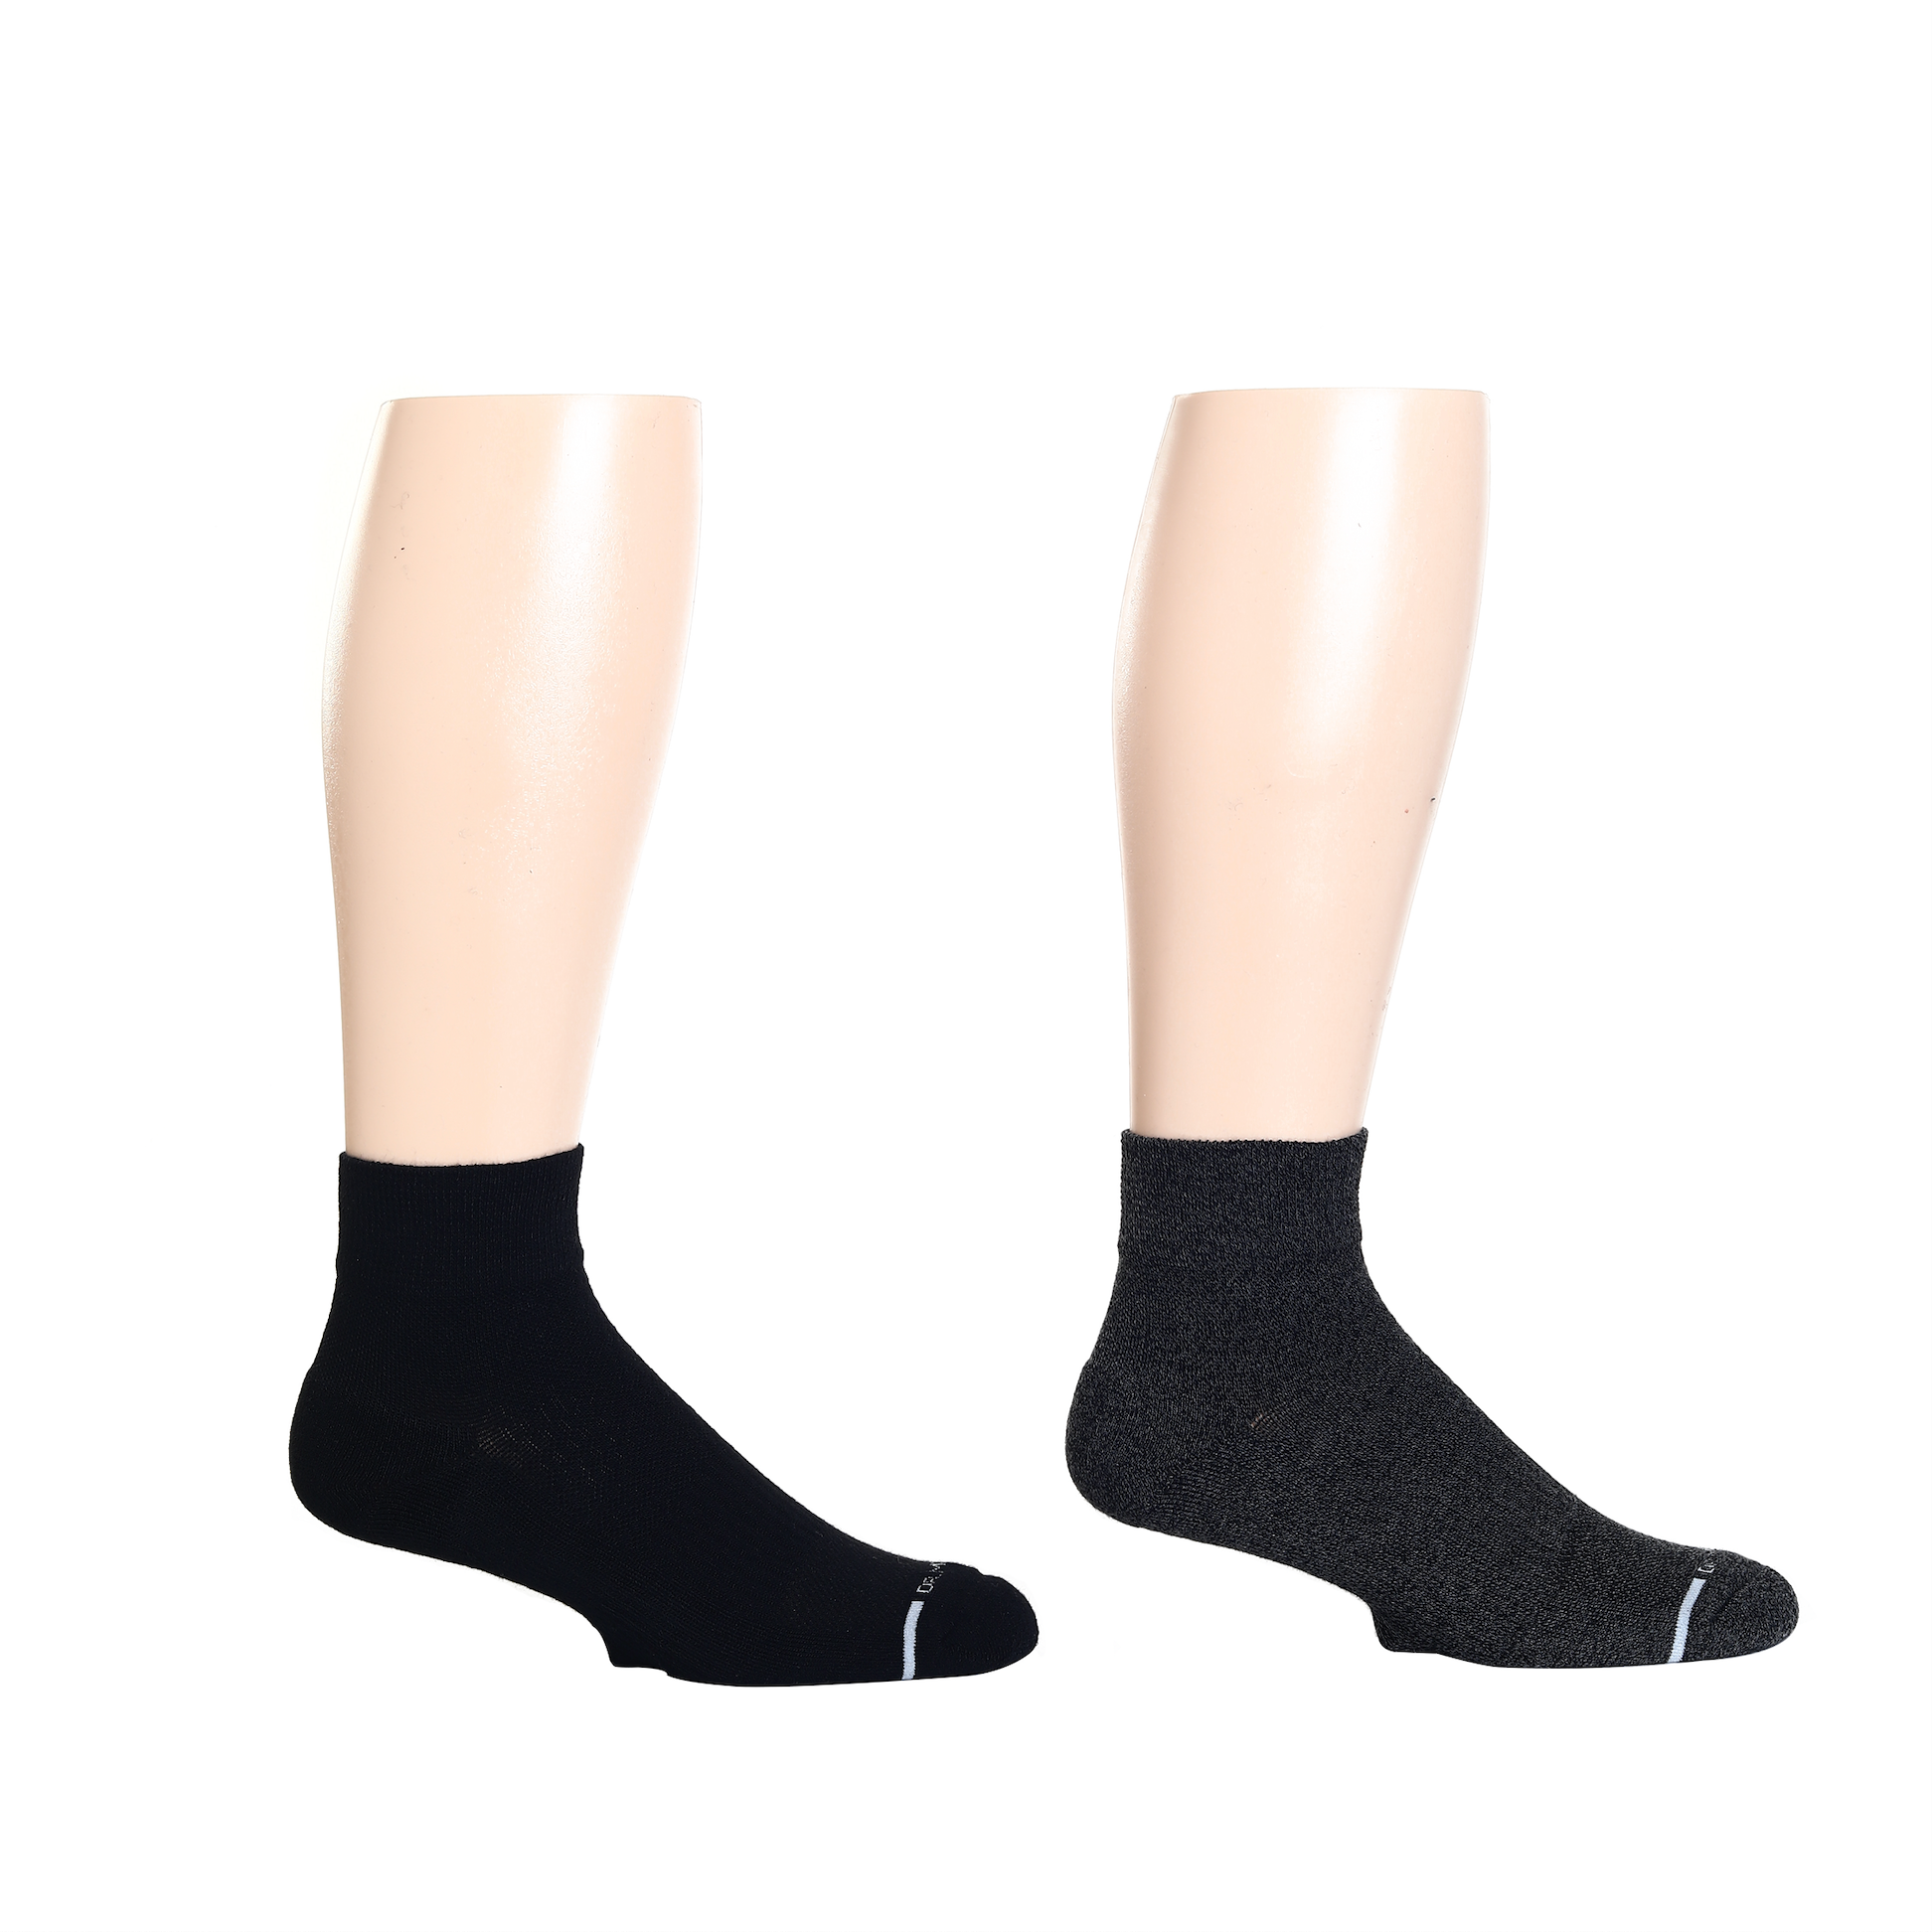 Dr. Motion Men's No-Show Compression 2-Pair Socks Set